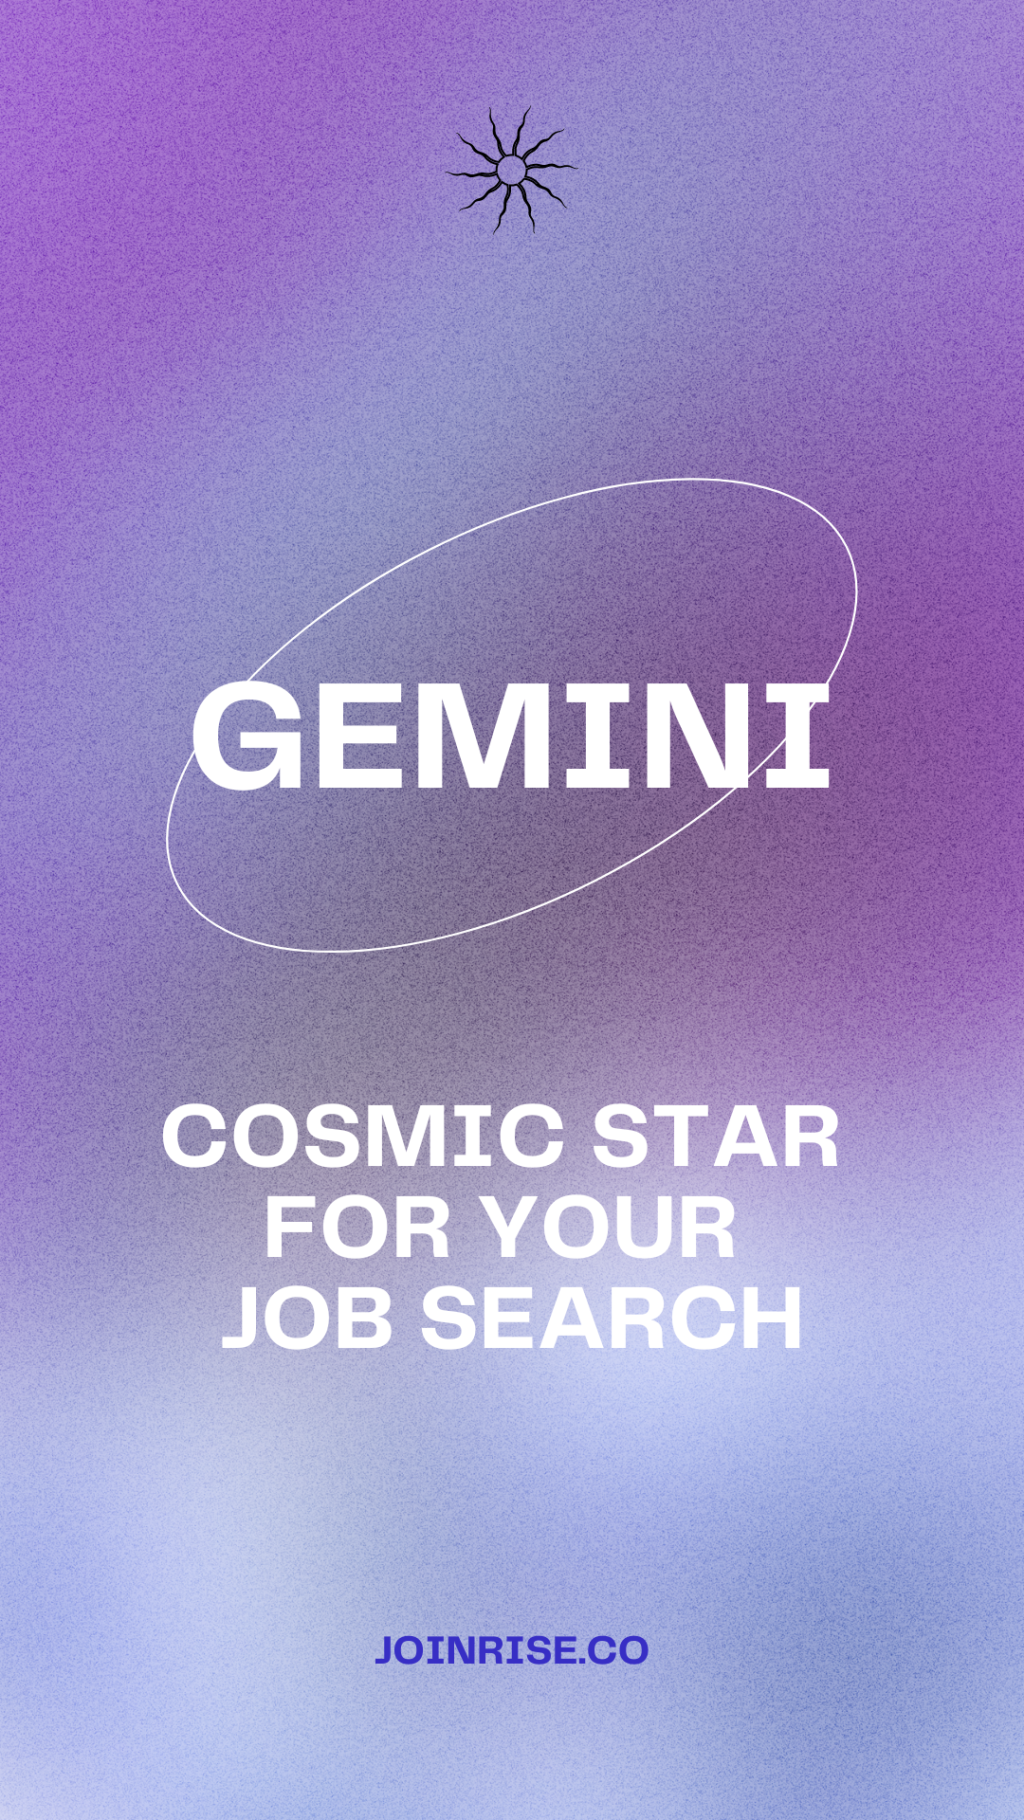 Gemini Jobs